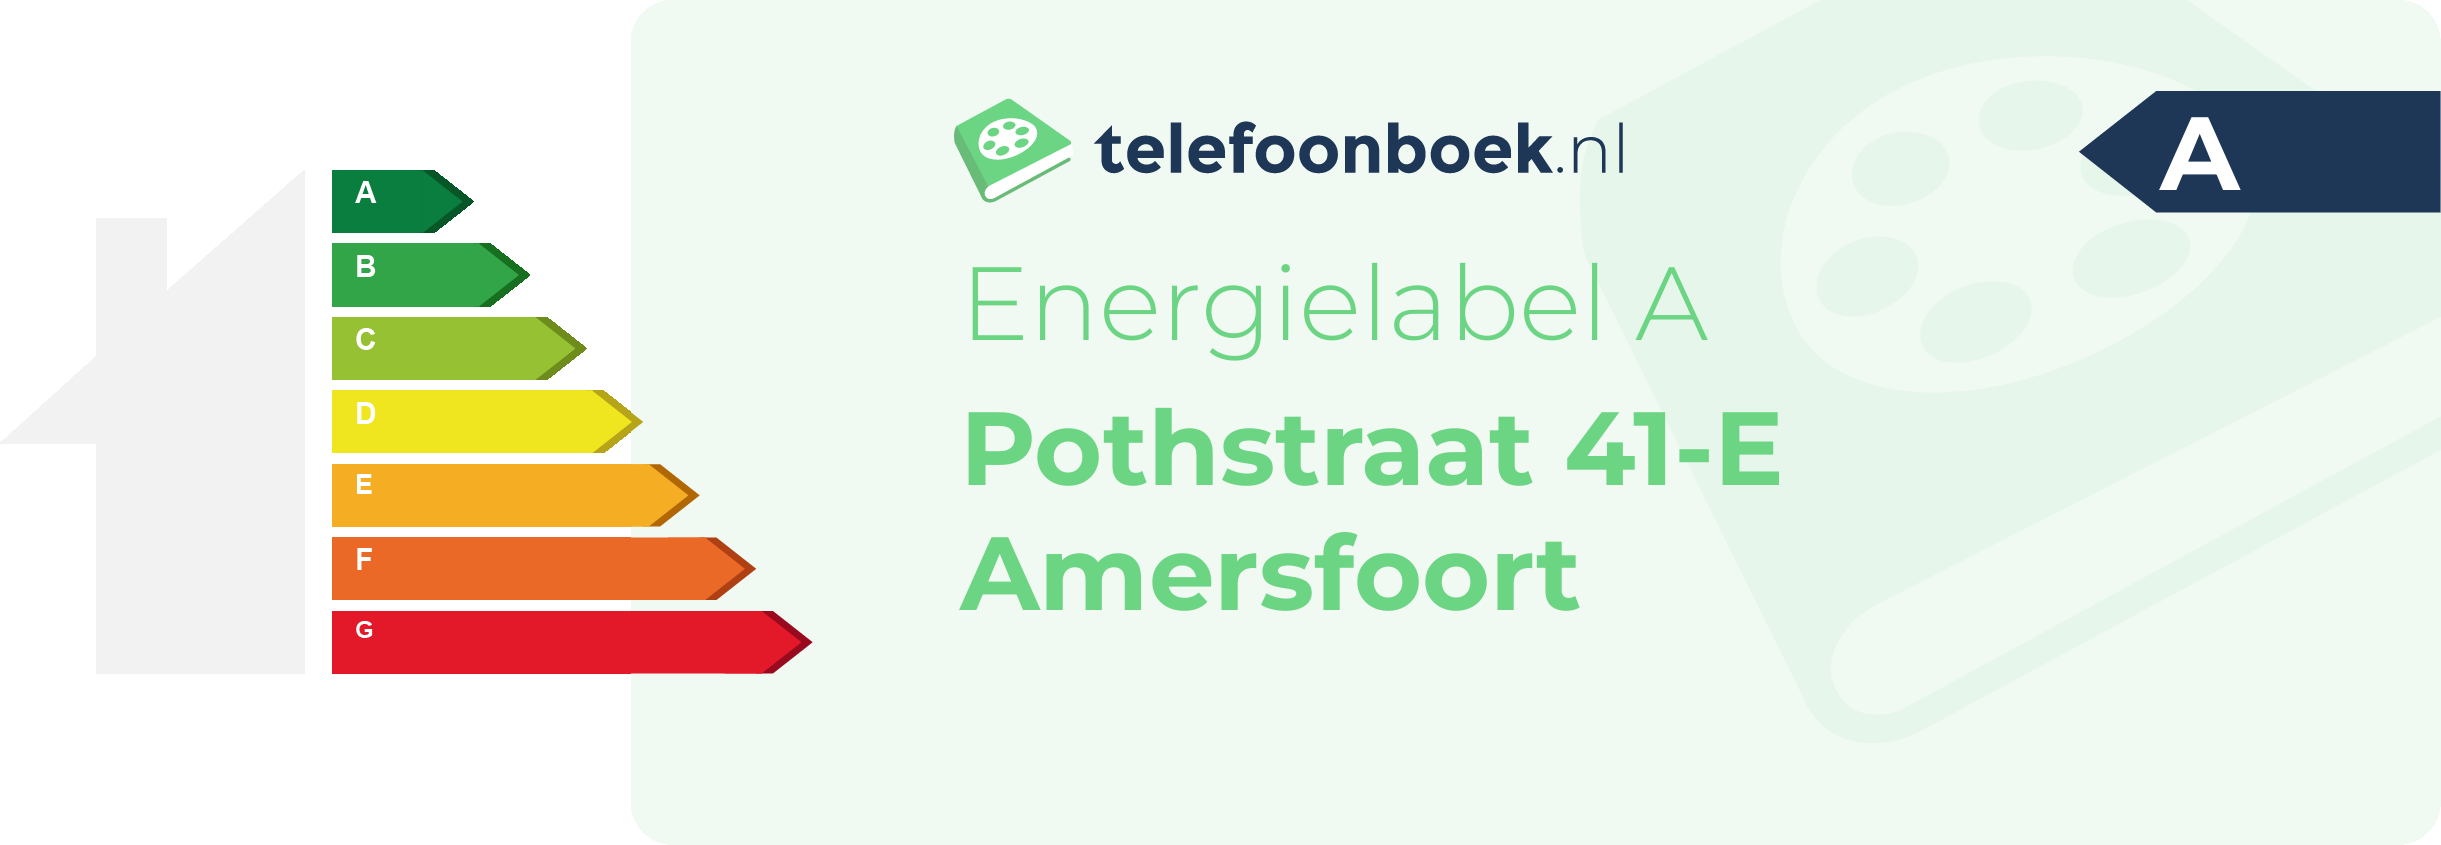 Energielabel Pothstraat 41-E Amersfoort